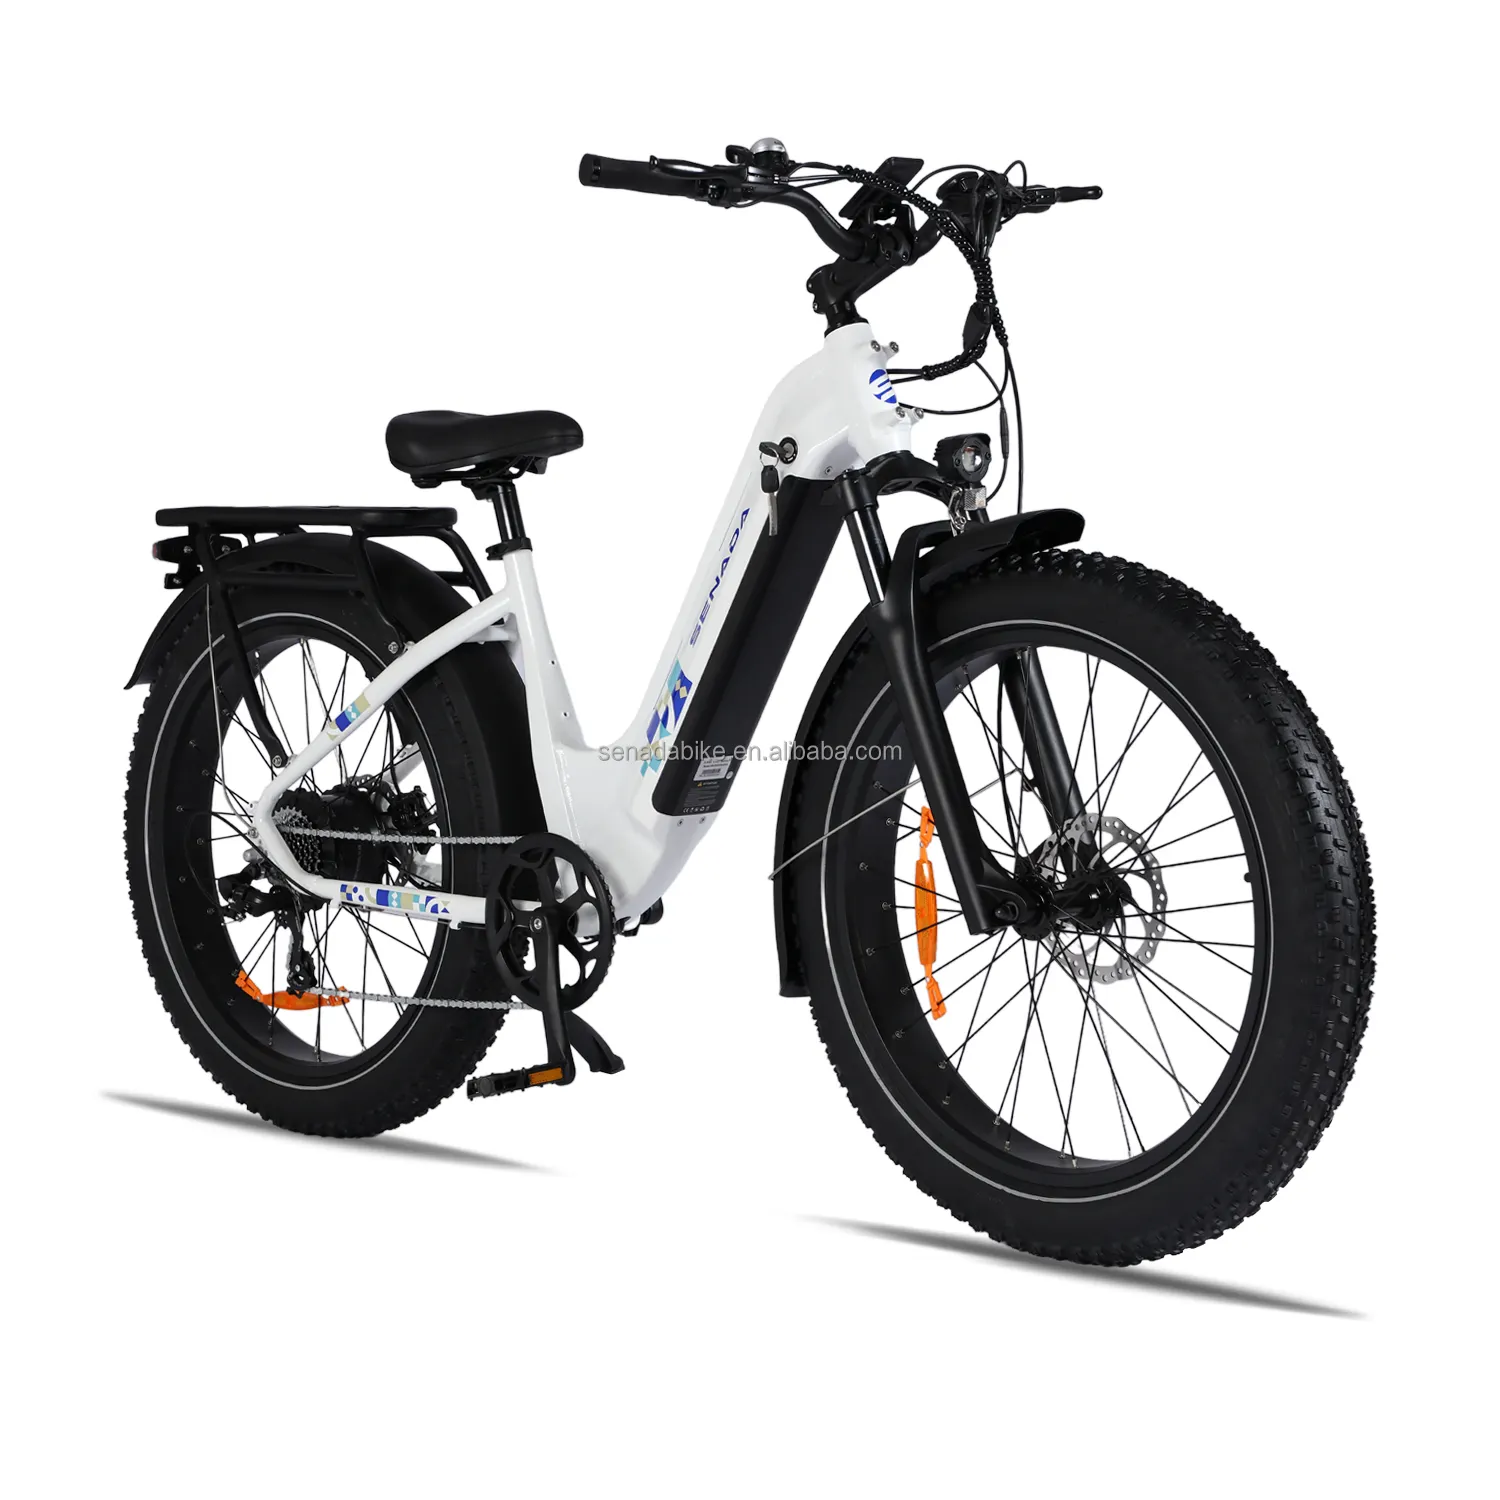 Allein-e-bike 500w elektrofahrrad-verkaufsressource für stadt im us-lager